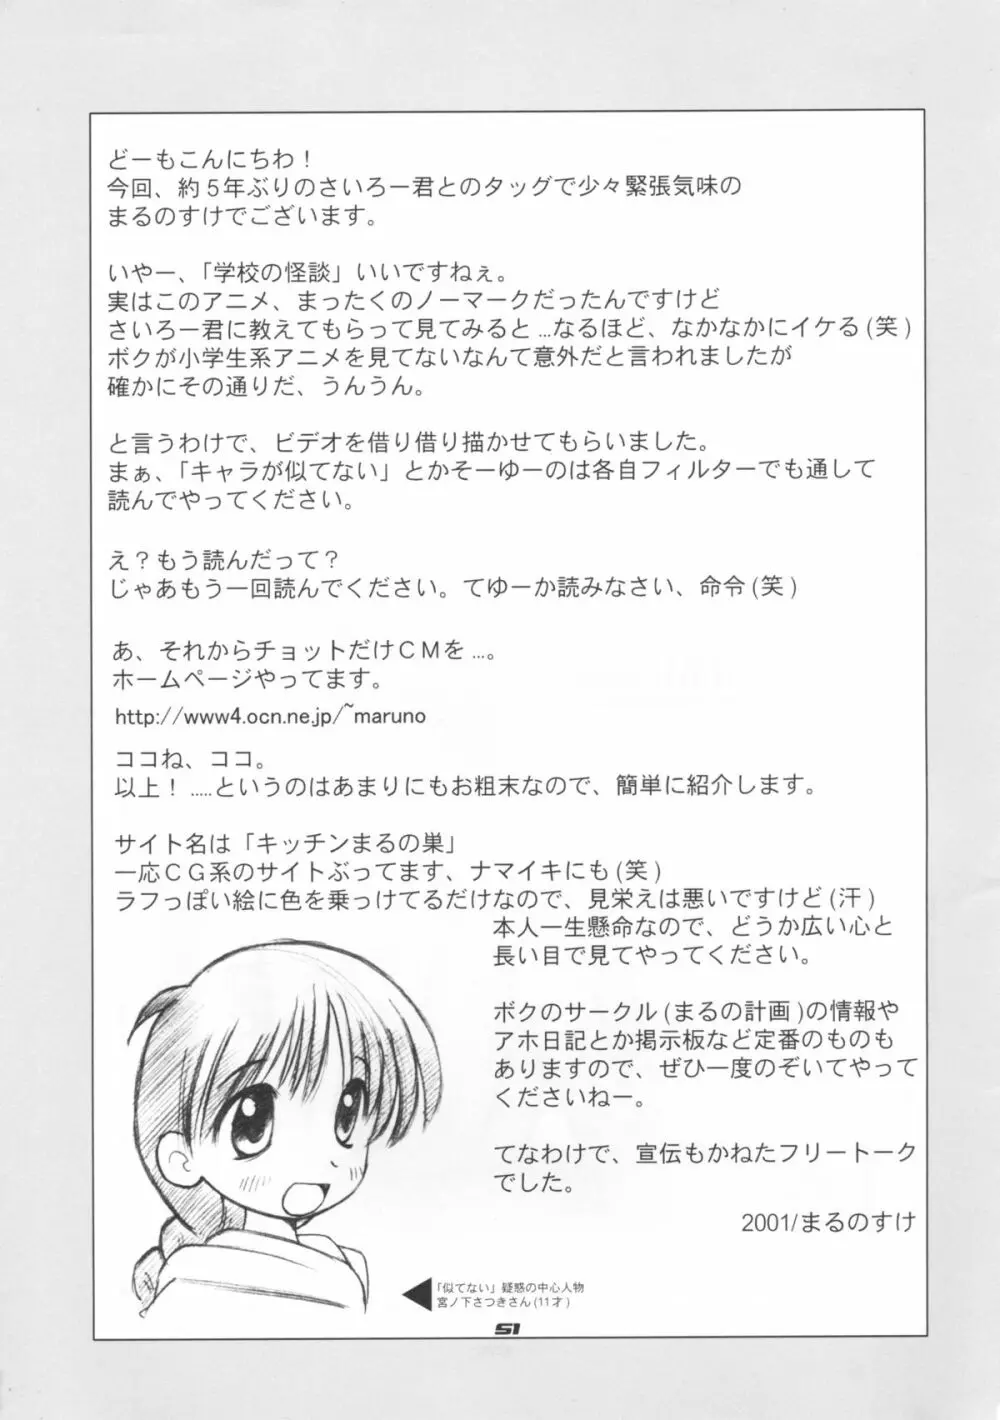 レイチョウサコム - 霊調査.com Ver0.5 - page50